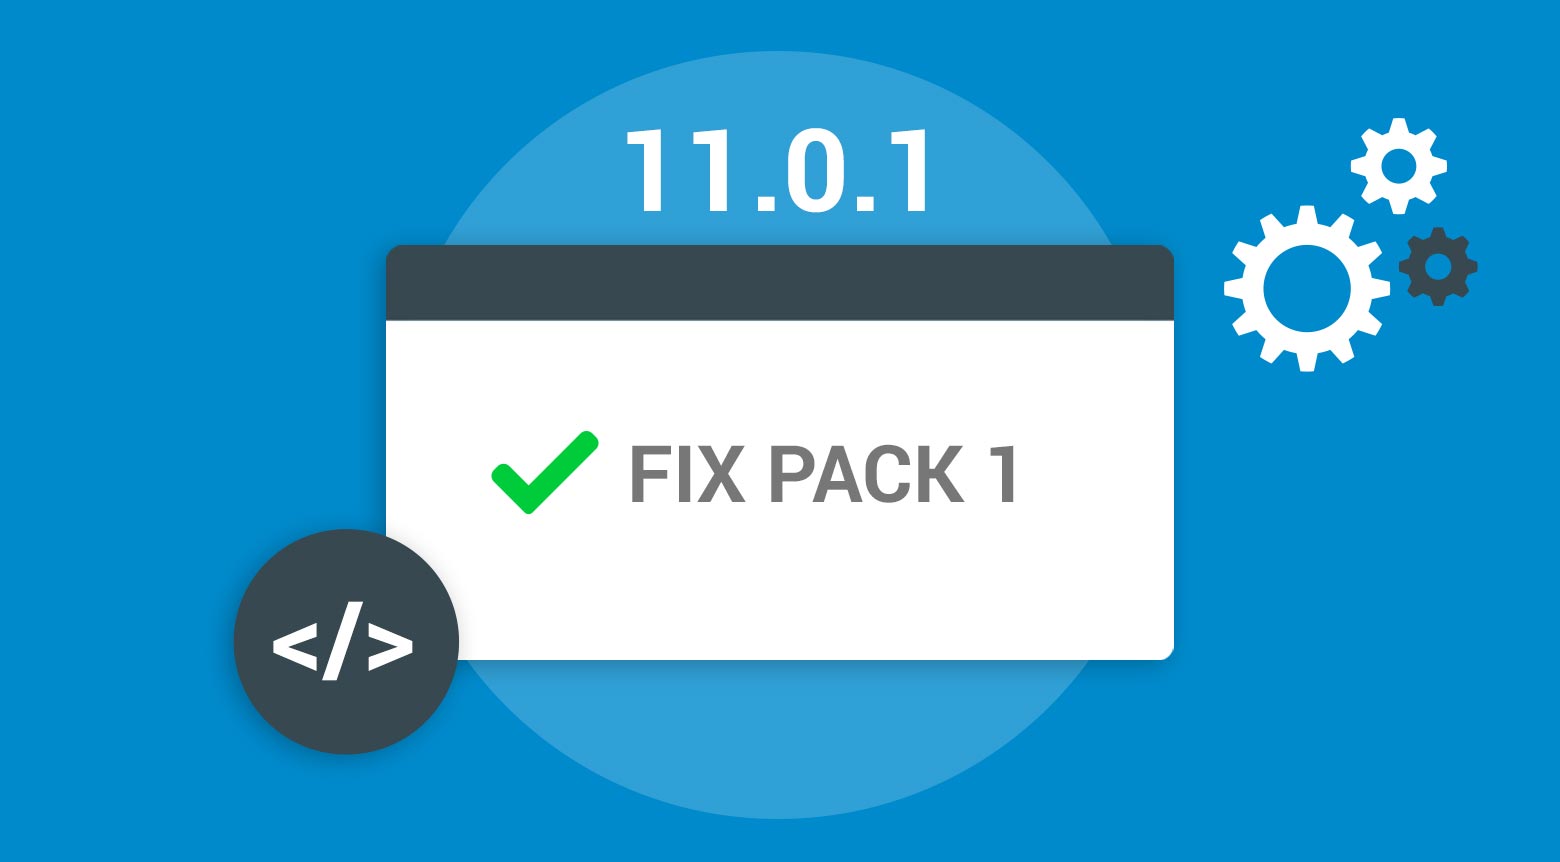 Fix Pack 1 für HCL Notes/Domino 11.0.1 ist verfügbar